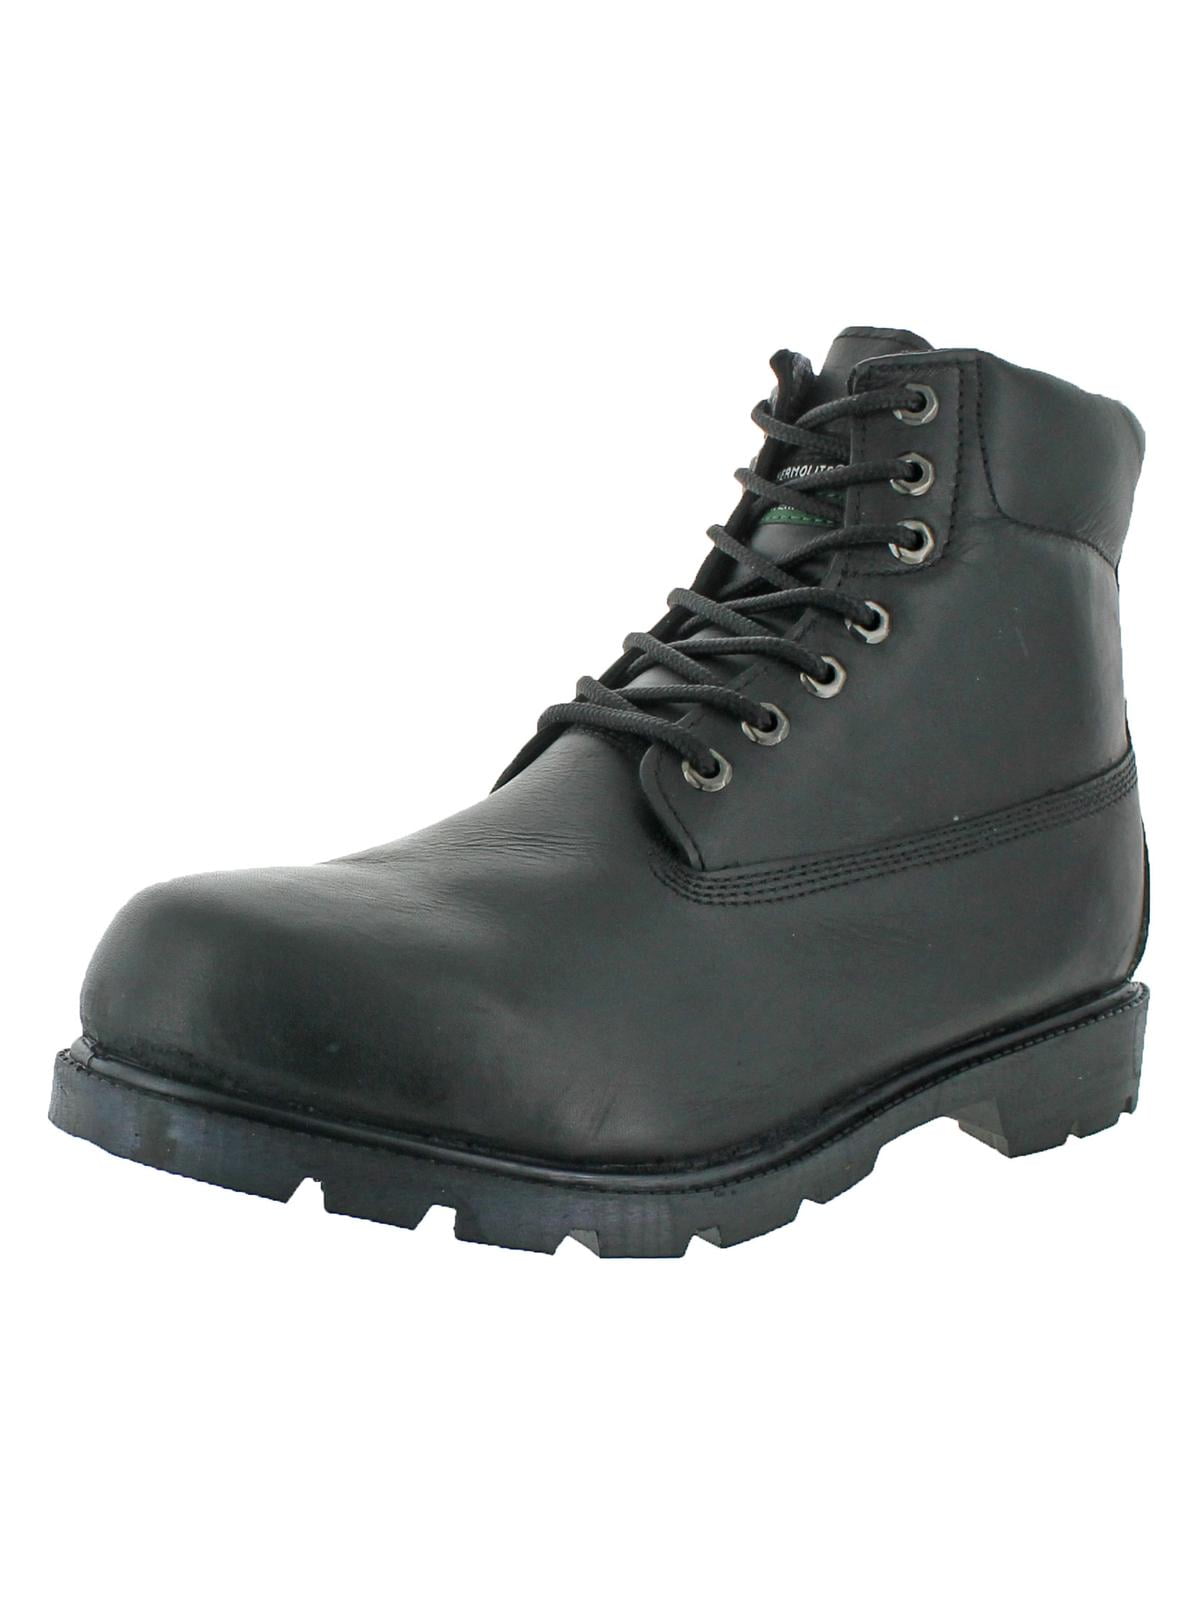 black work boots walmart